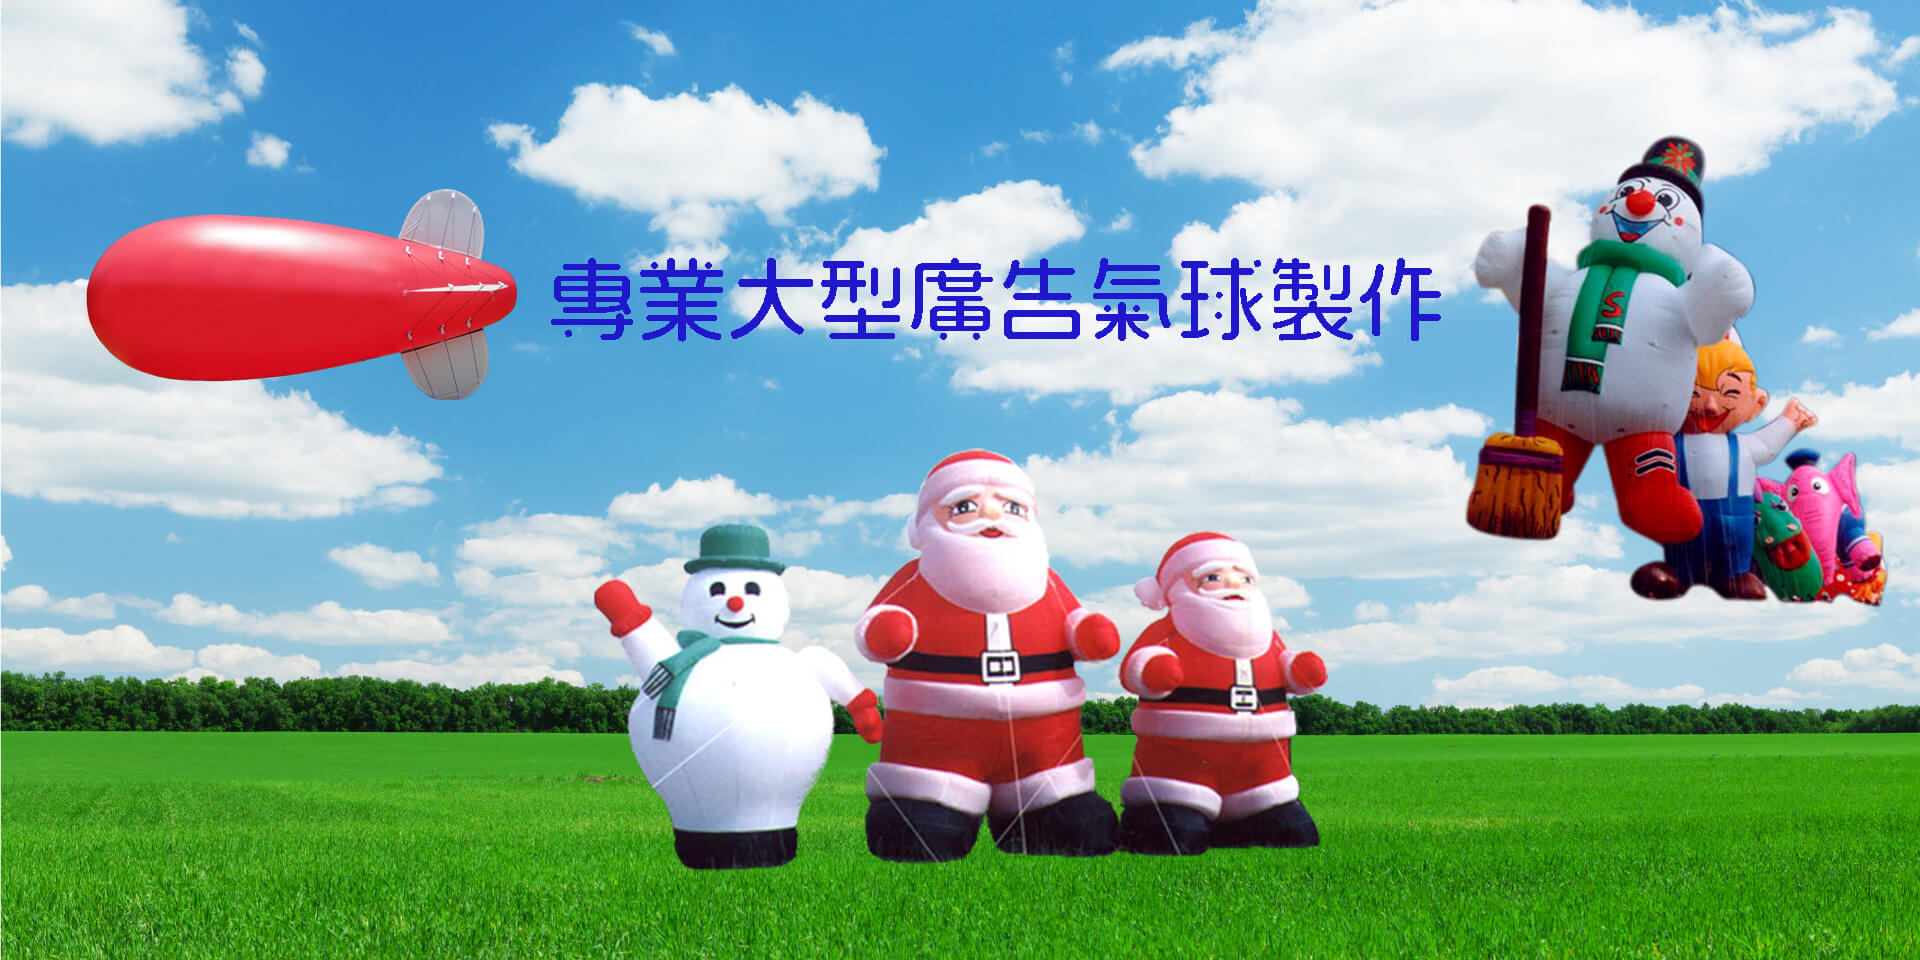 聖誕系列廣告氣球